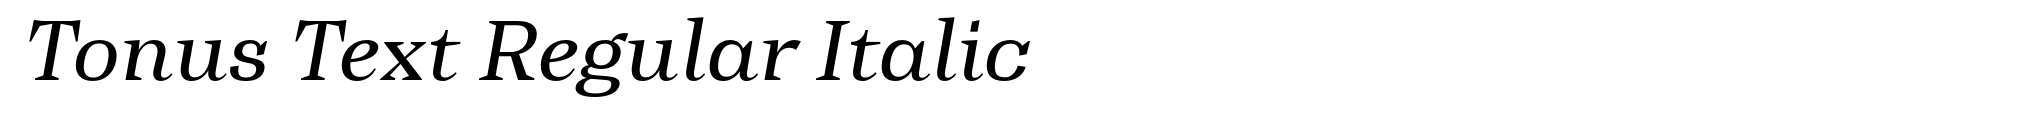 Tonus Text Regular Italic image